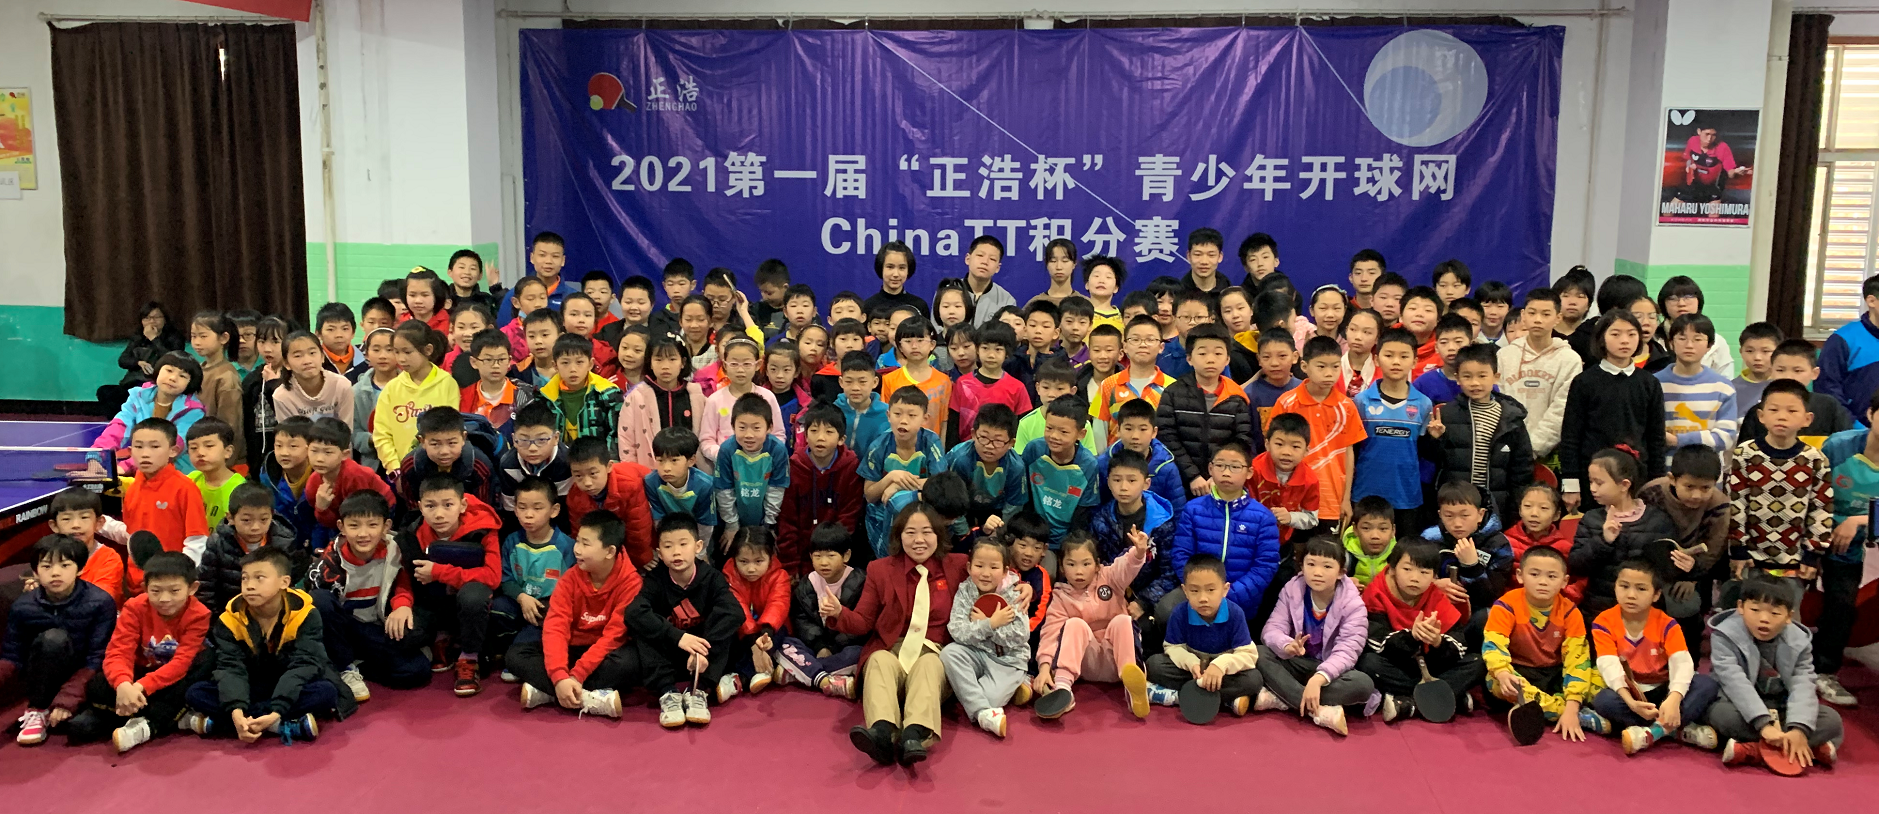 2021年第三届“正浩.金冠杯”青少年开球网ChinaTT积分赛丙组